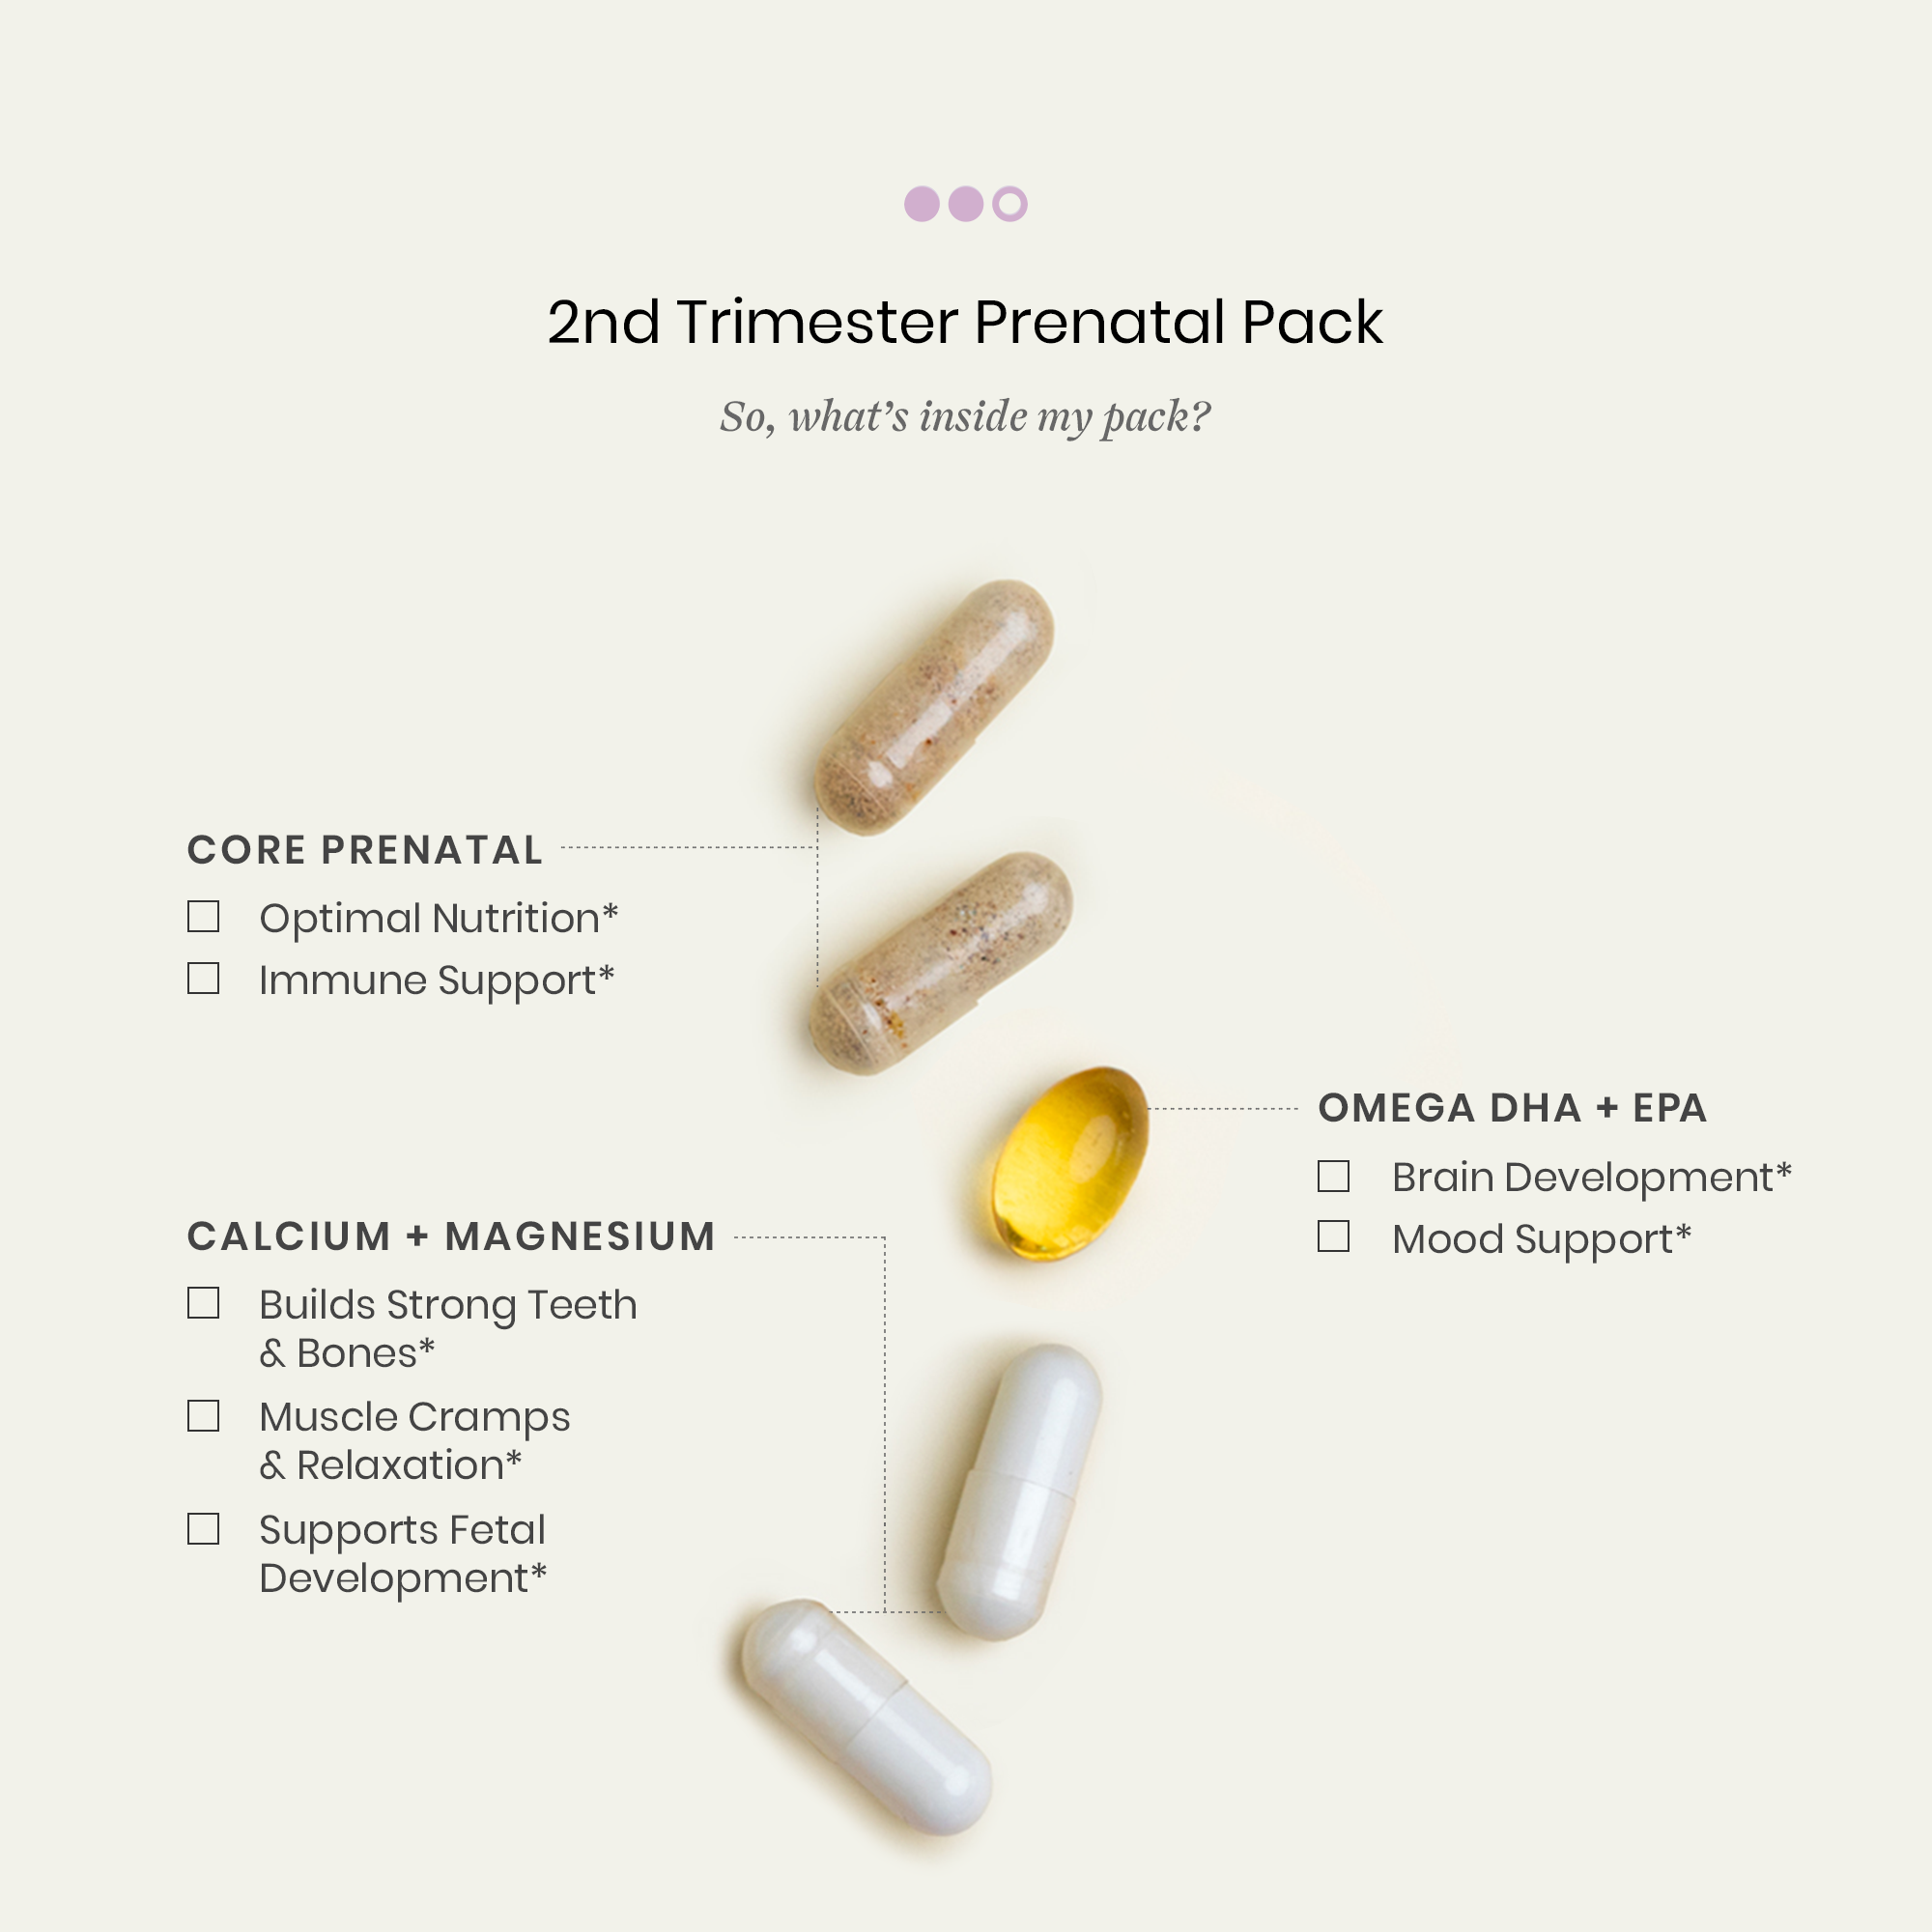 2nd Trimester Prenatal Pack Pills & Benefits